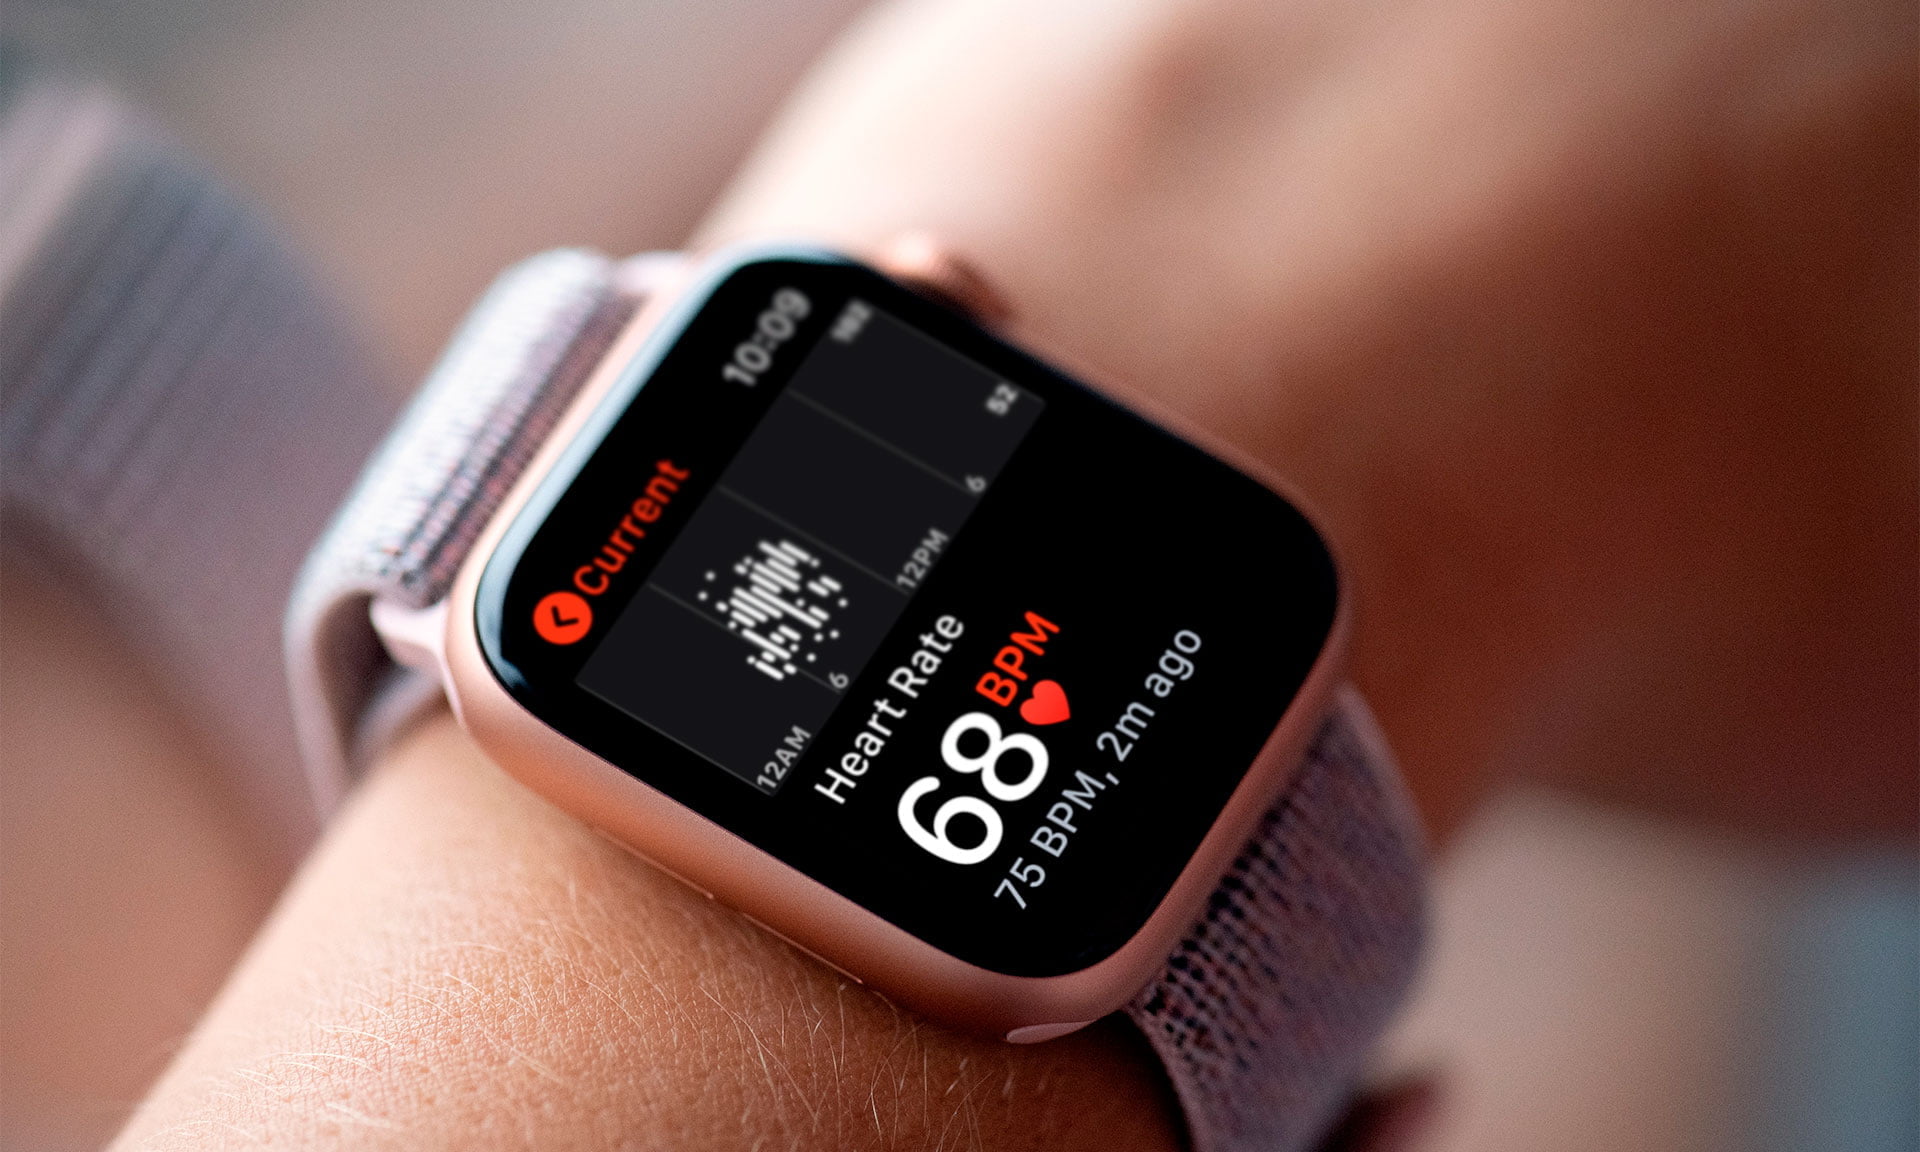 Apple Watch Heart Rate EKG